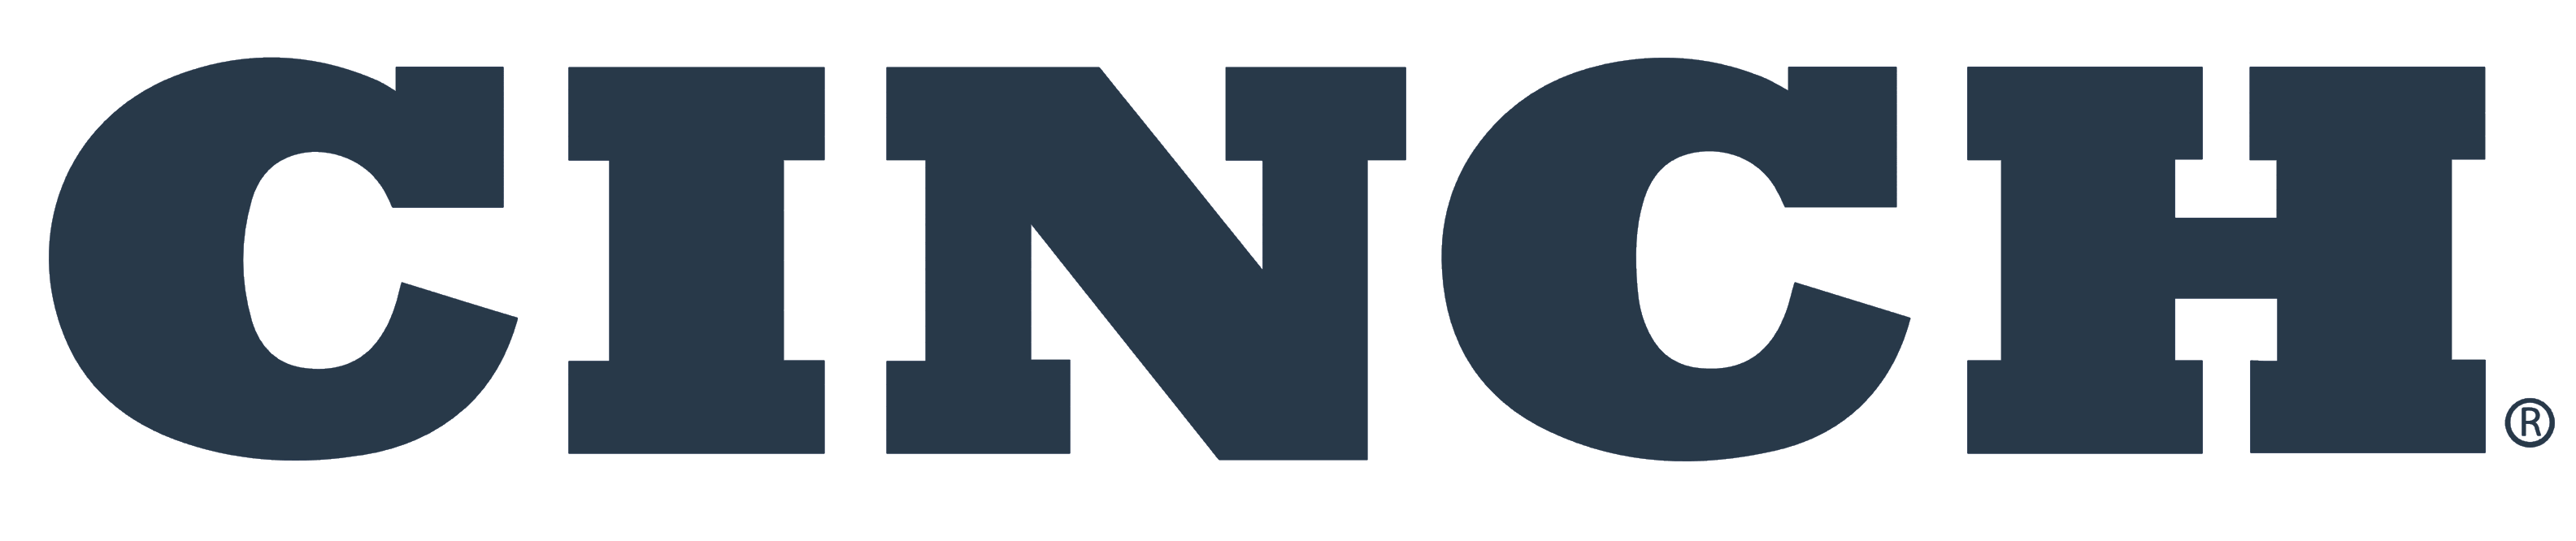 Cinch Jeans logo, logotype